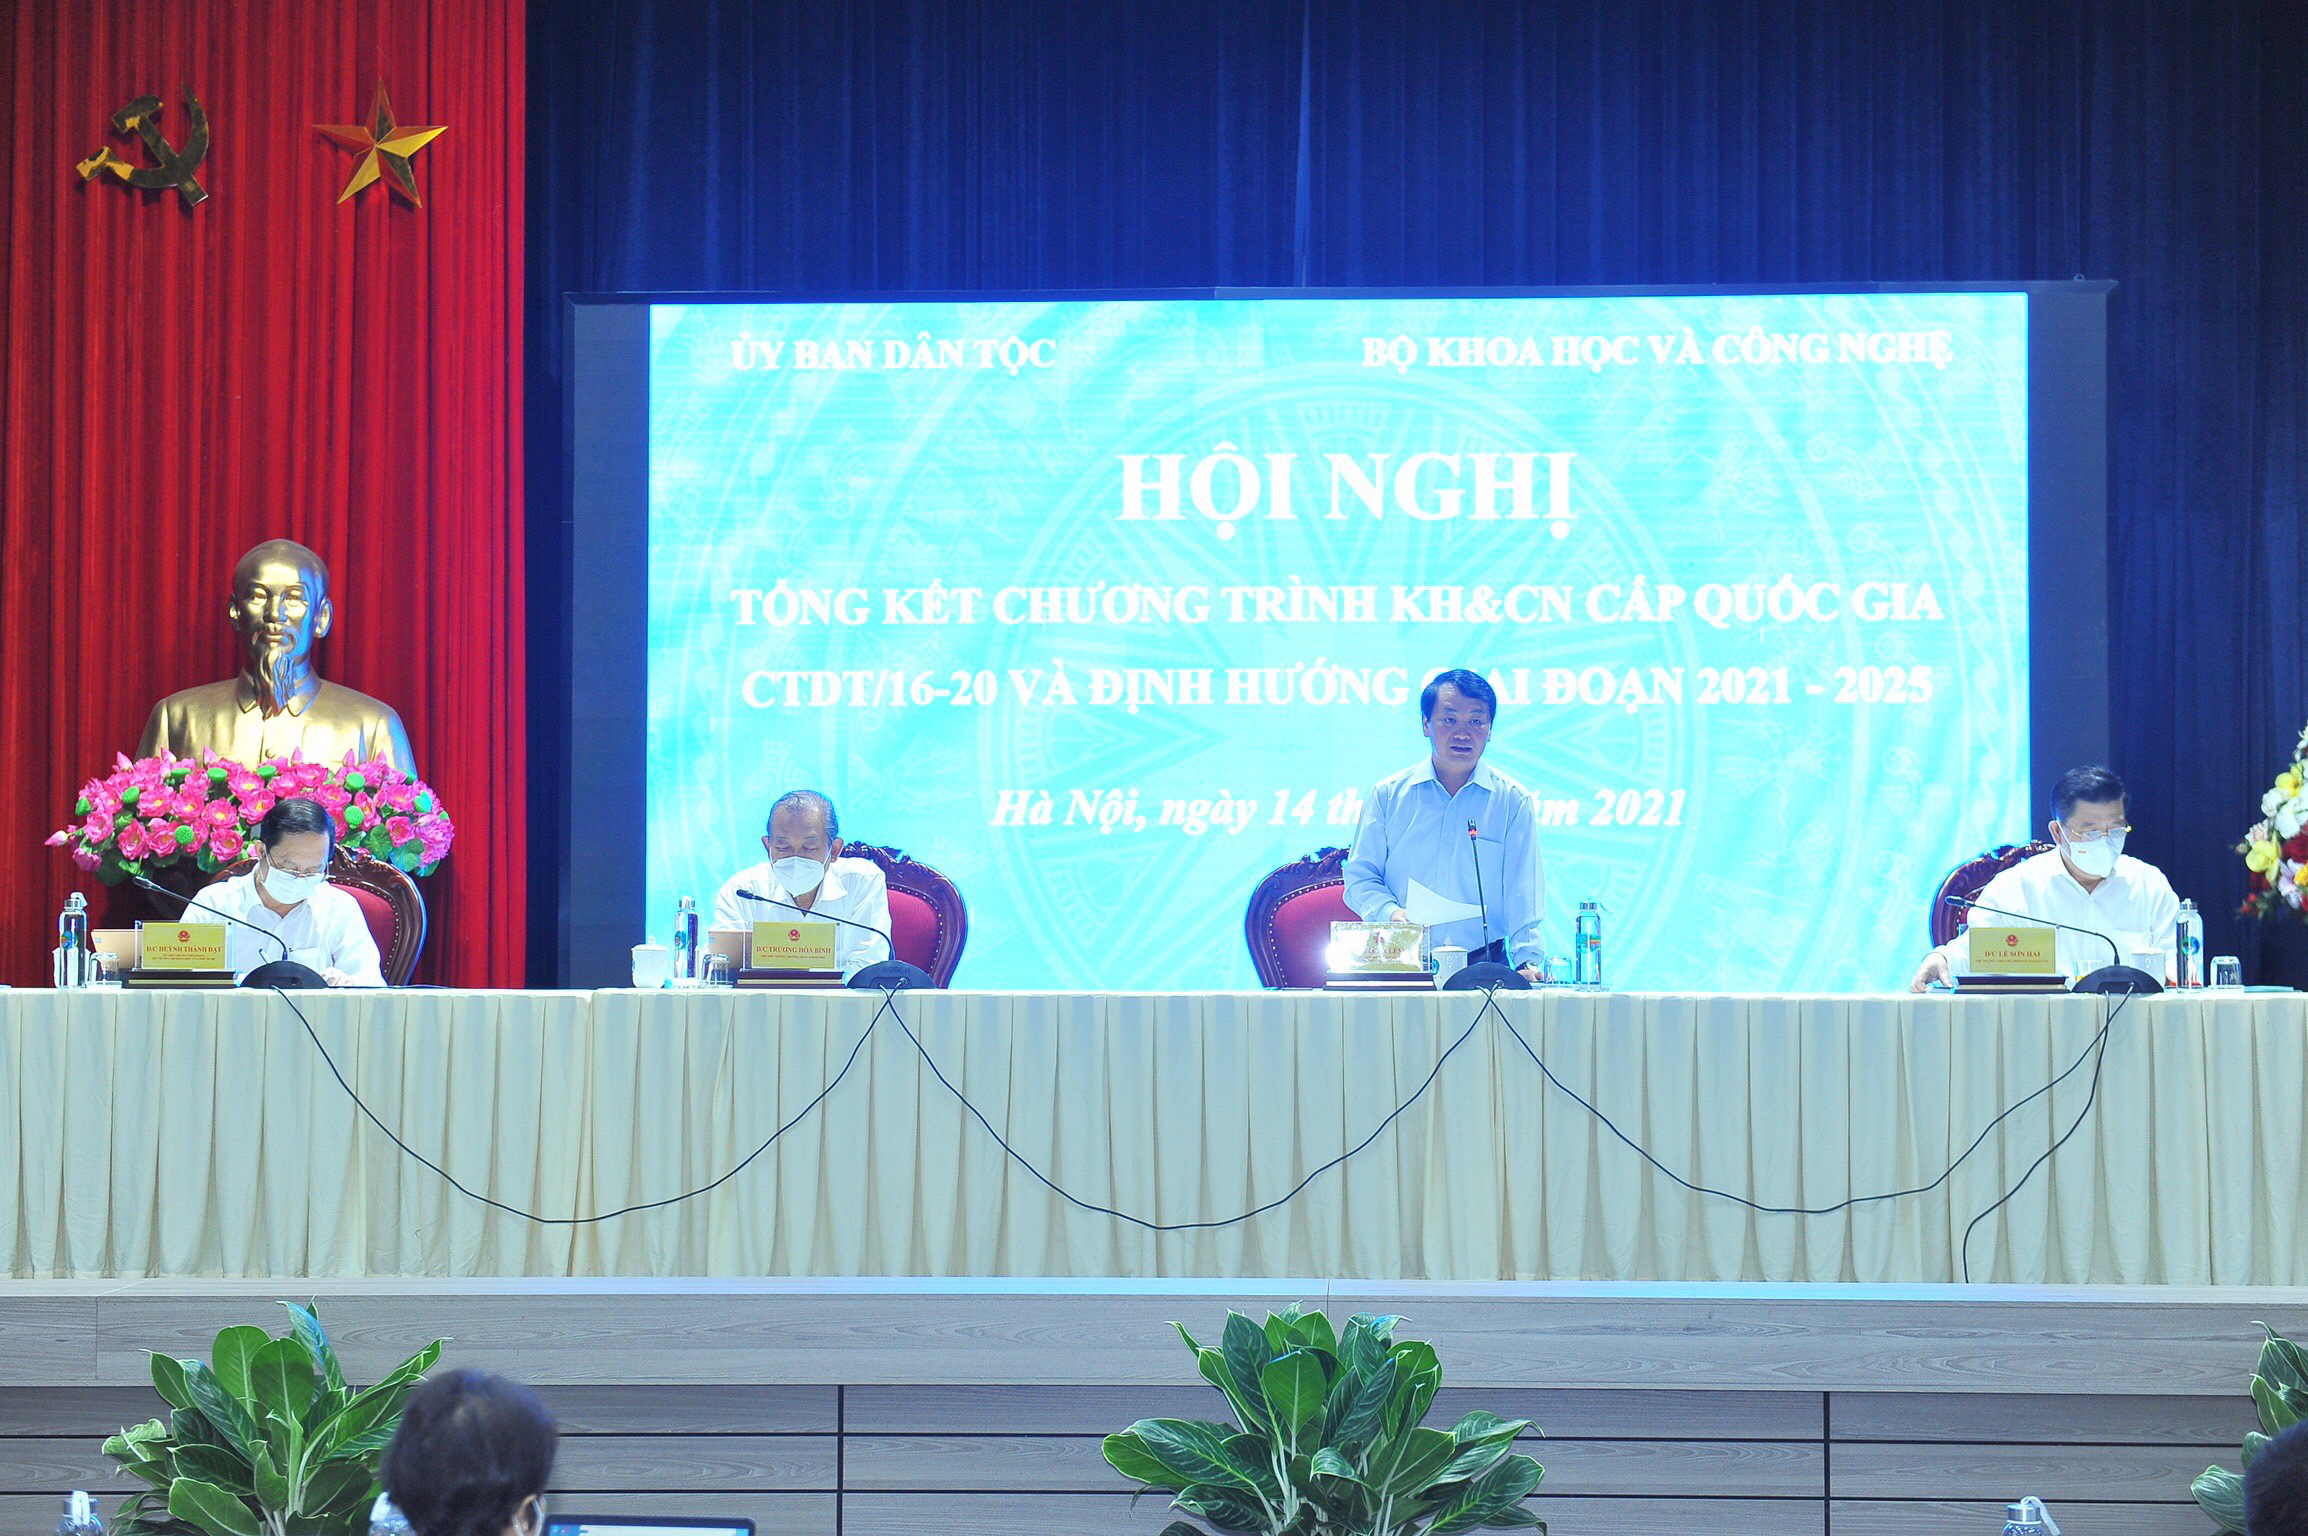 Hội nghị Tổng kết Chương trình Khoa học và công nghệ (KH&CN) cấp quốc gia CTDT/16-20 và định hướng giai đoạn 2021-2025 ngày 14/7. Ảnh: VGP/Lê Sơn